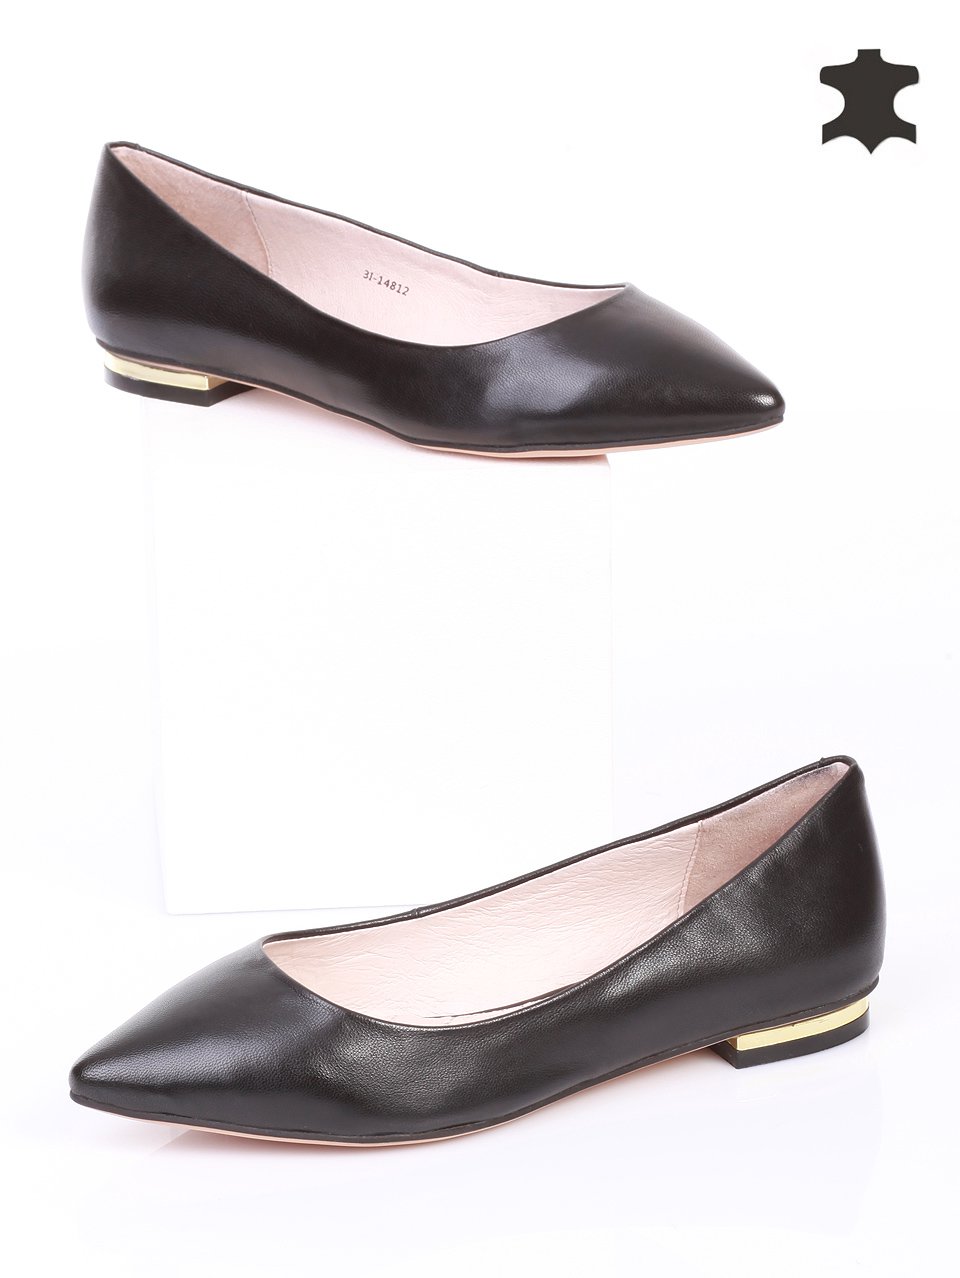 Ежедневни дамски обувки от естествена кожа 3I-14812 black